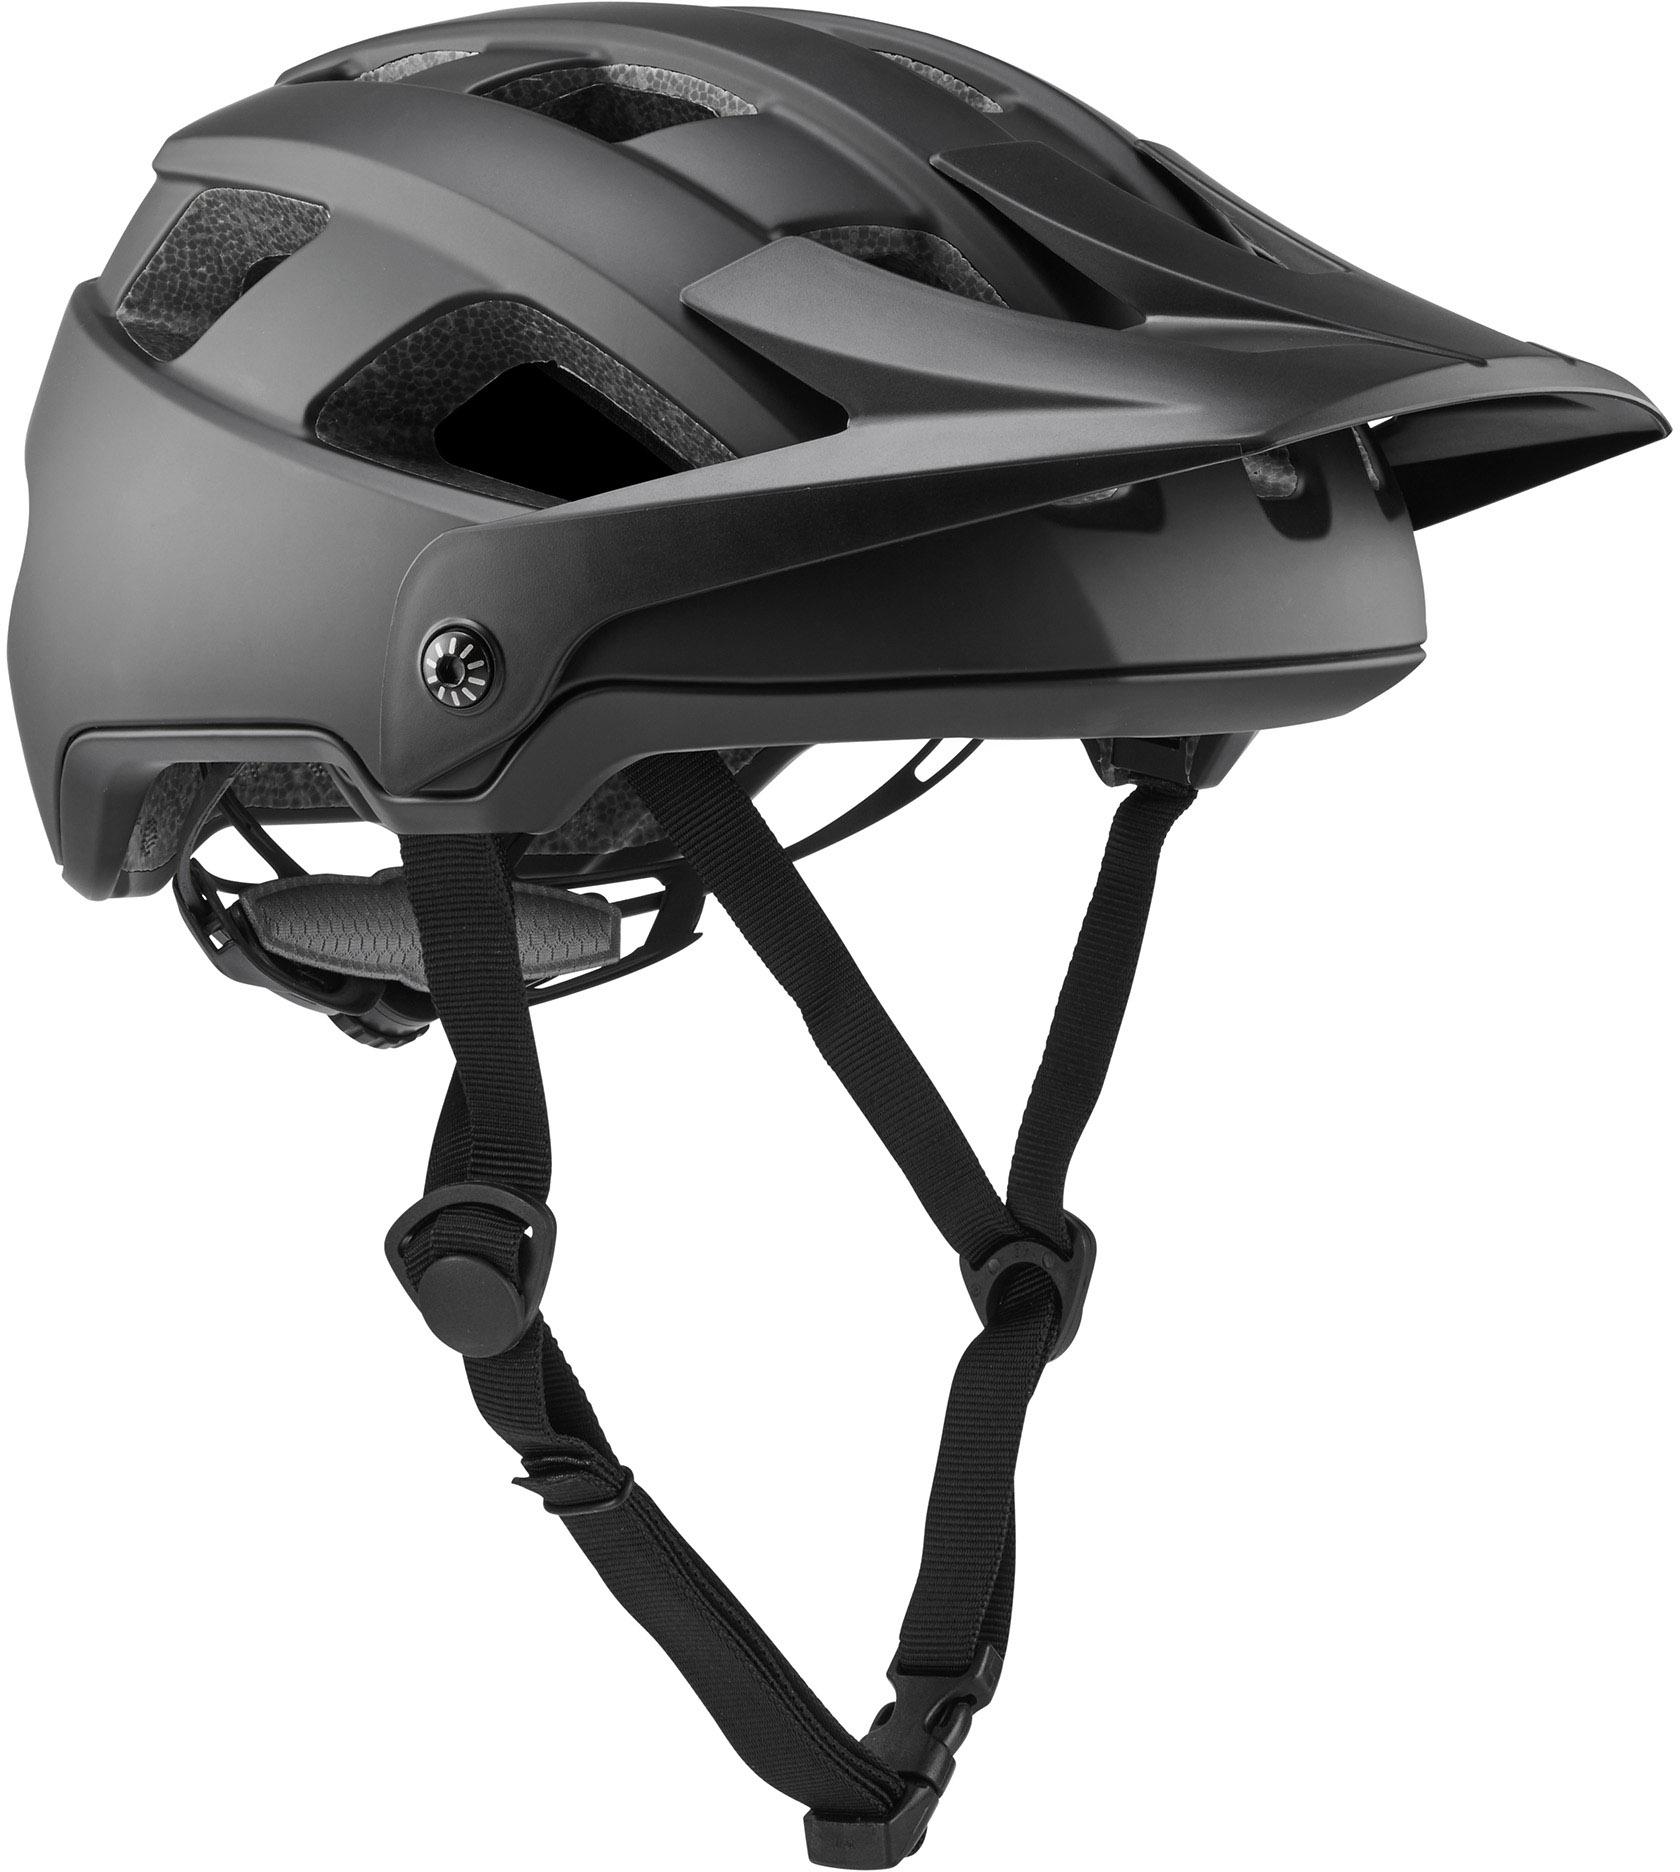 Brand-x Eh1 Enduro Mtb Cycling Helmet  Black/black